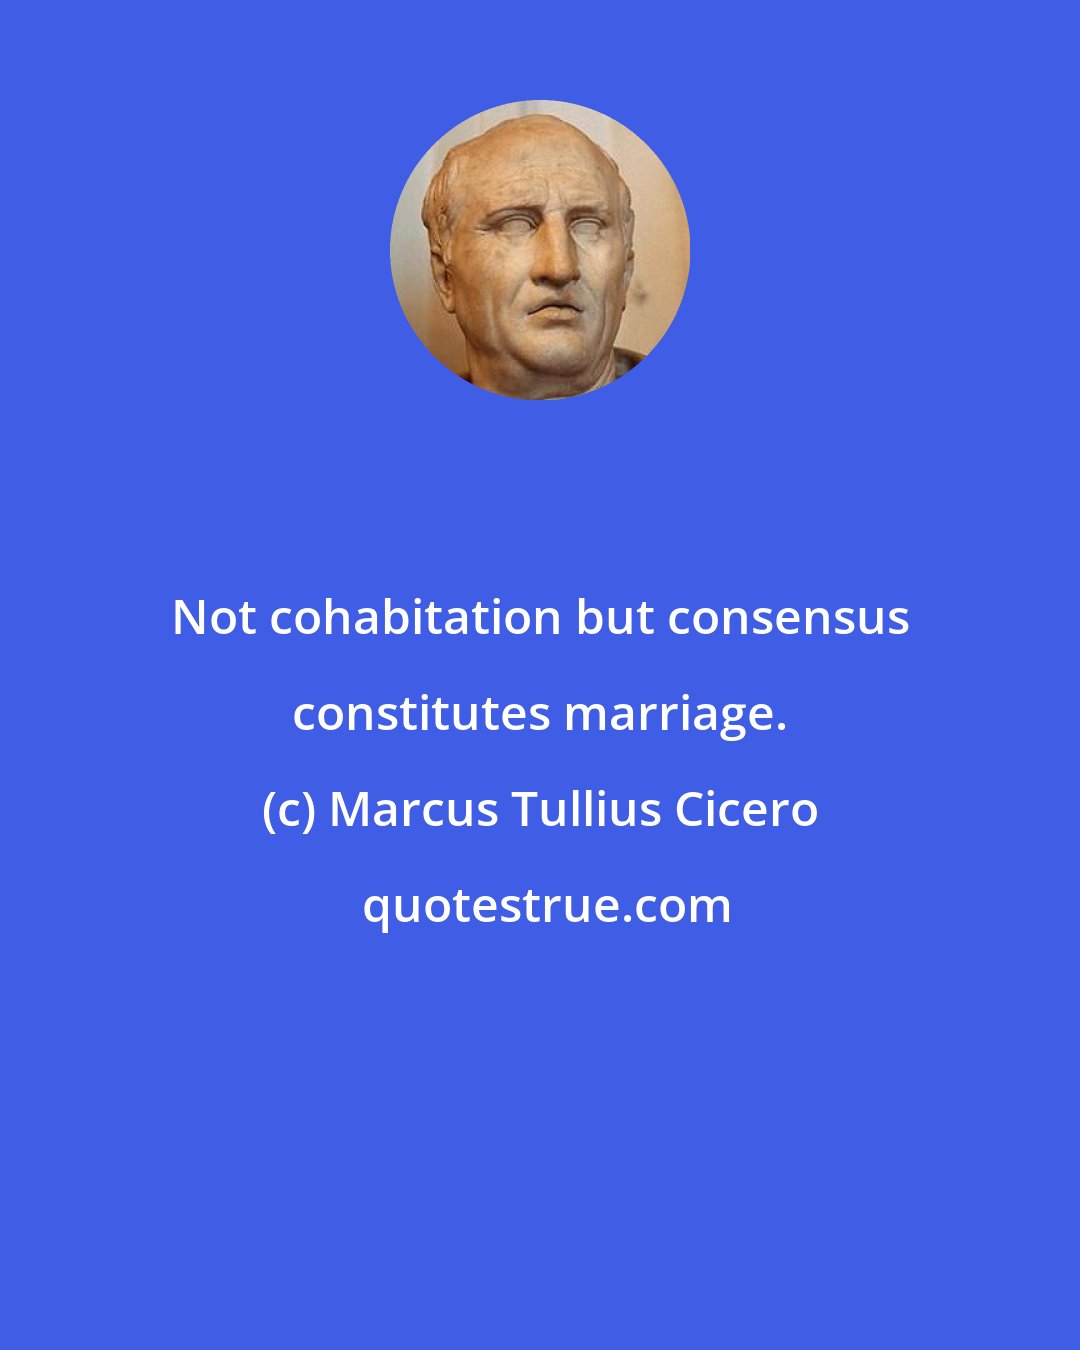 Marcus Tullius Cicero: Not cohabitation but consensus constitutes marriage.